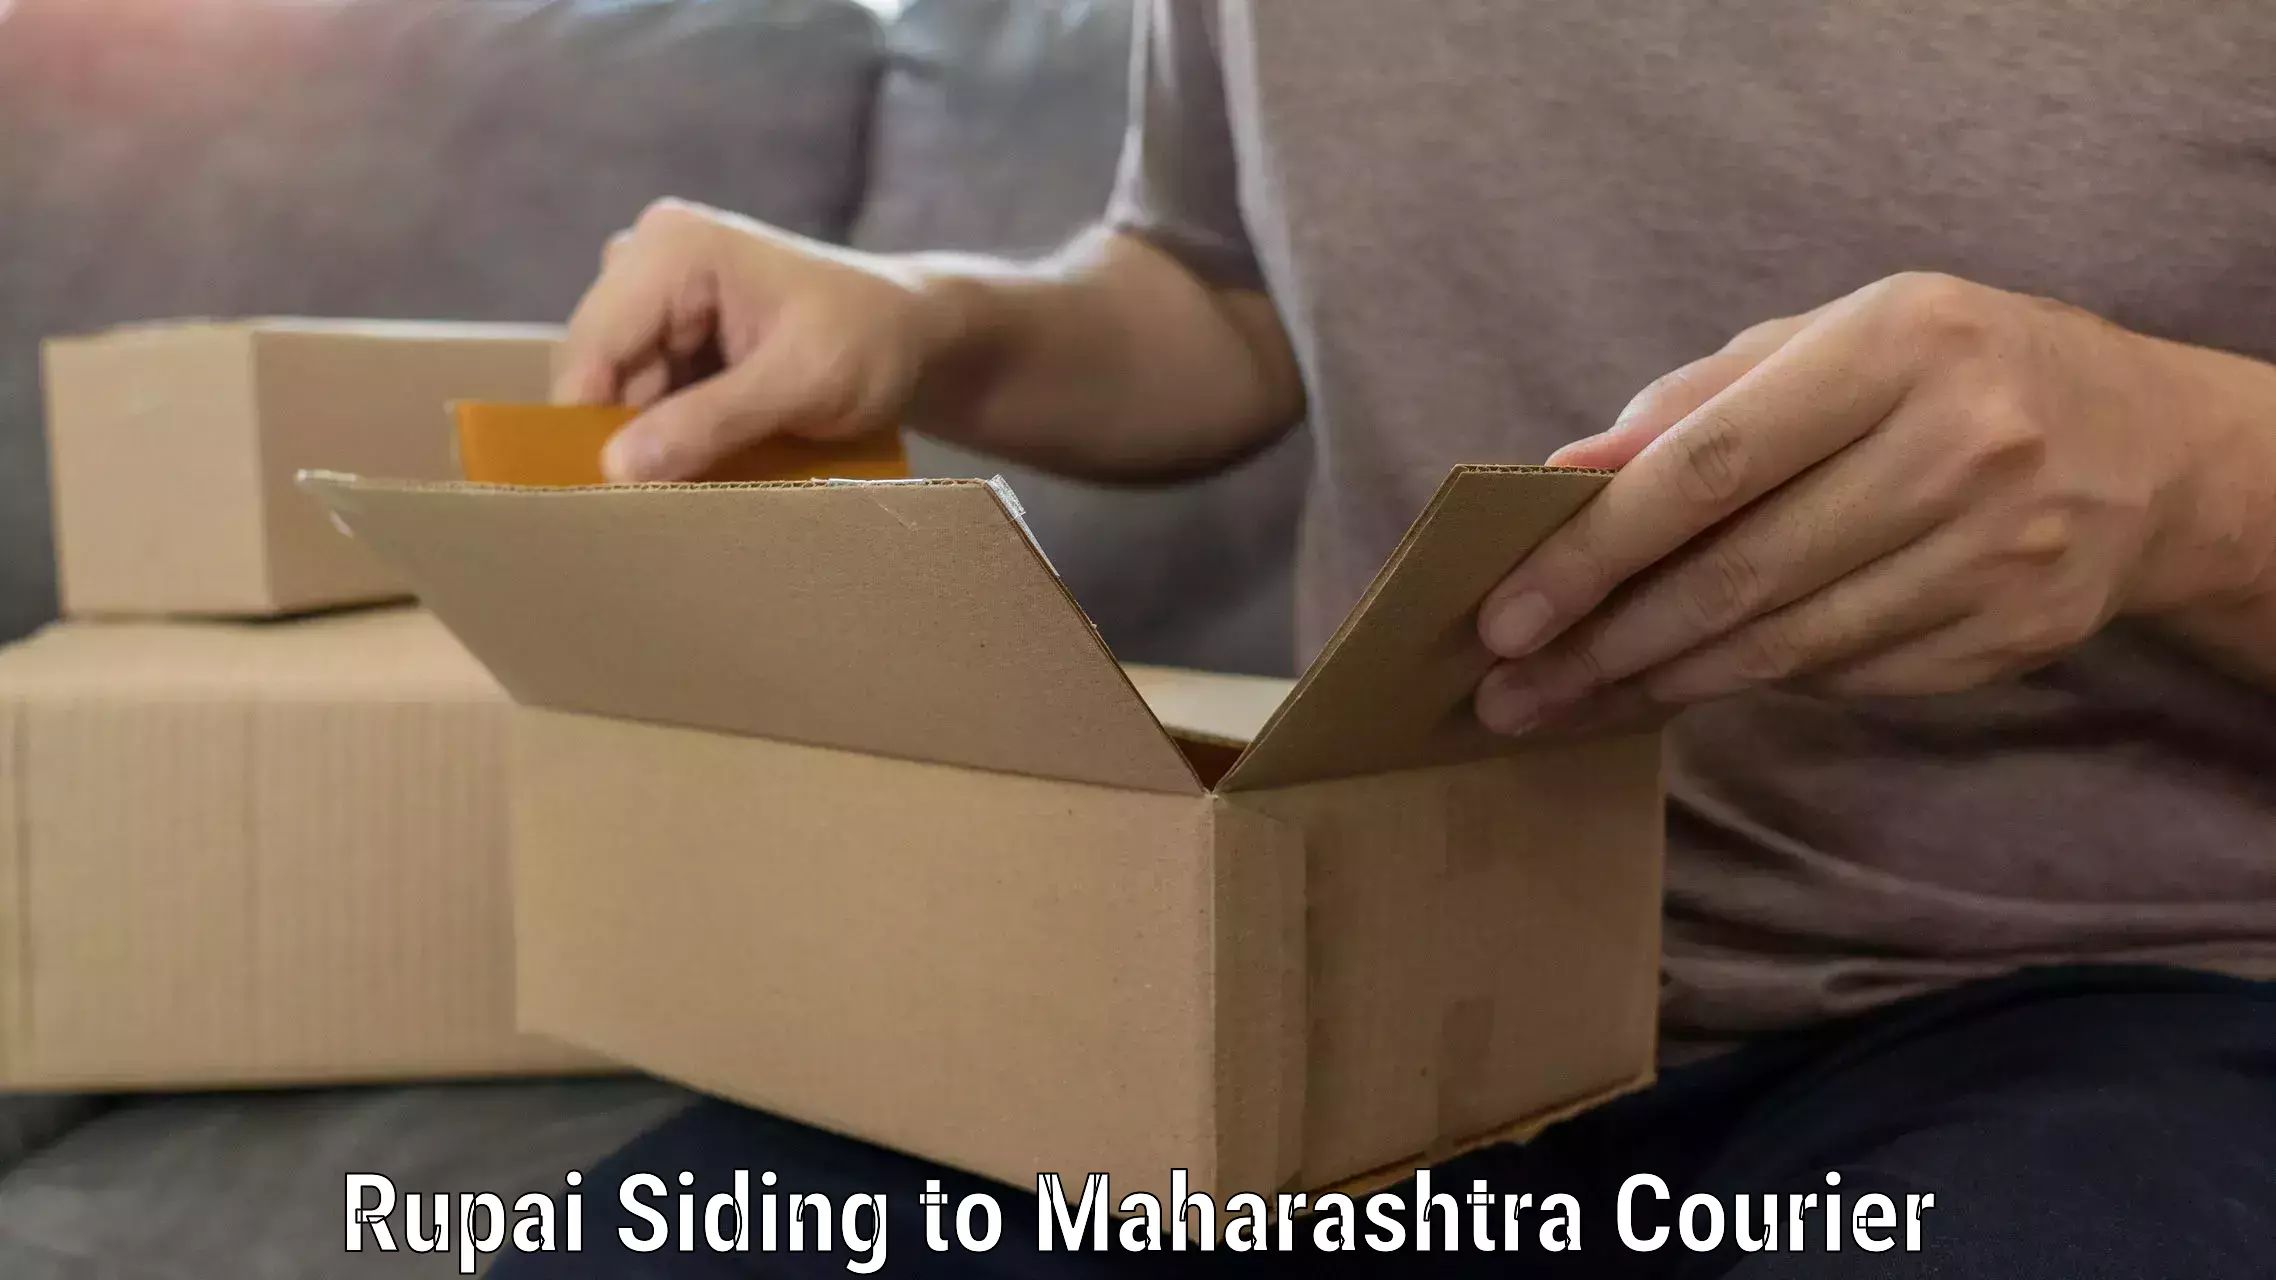 Furniture moving and handling Rupai Siding to Maharashtra